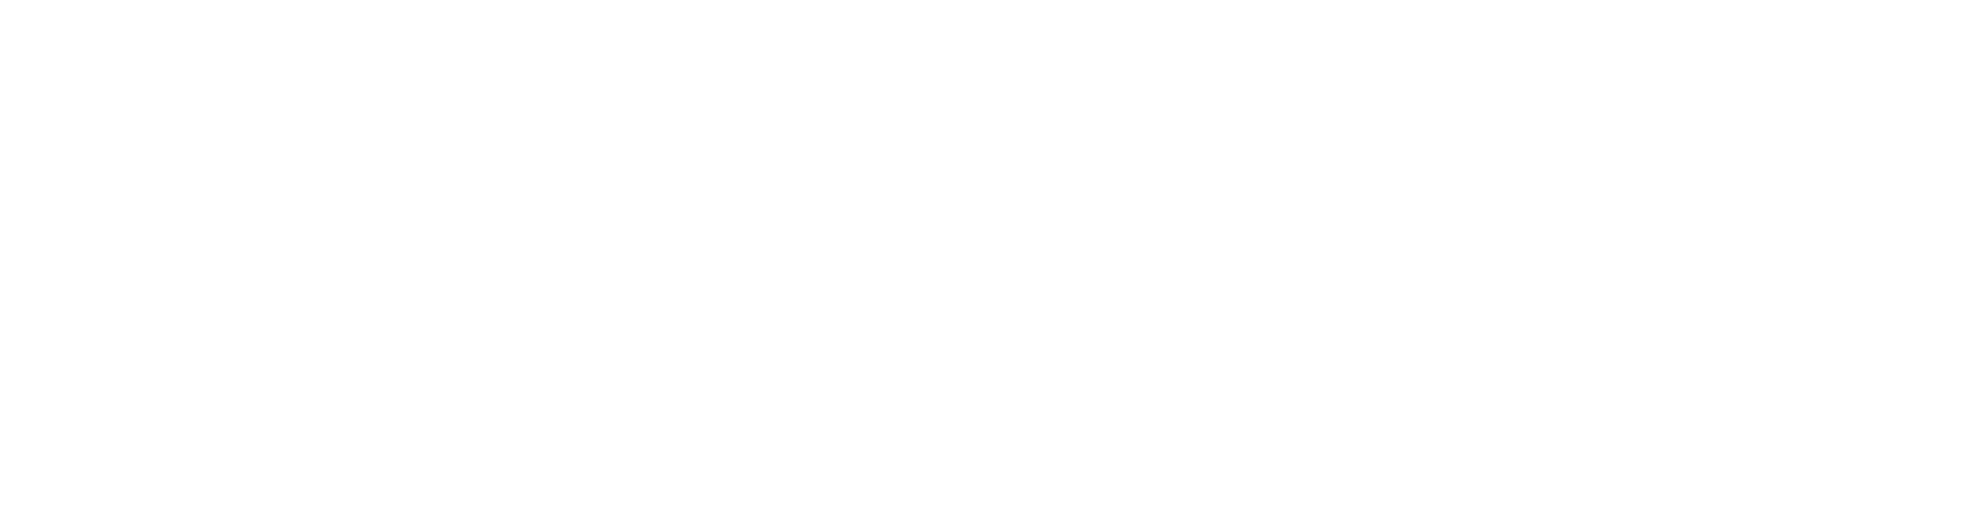 Logo Katedry Polityki Ekonomicznej